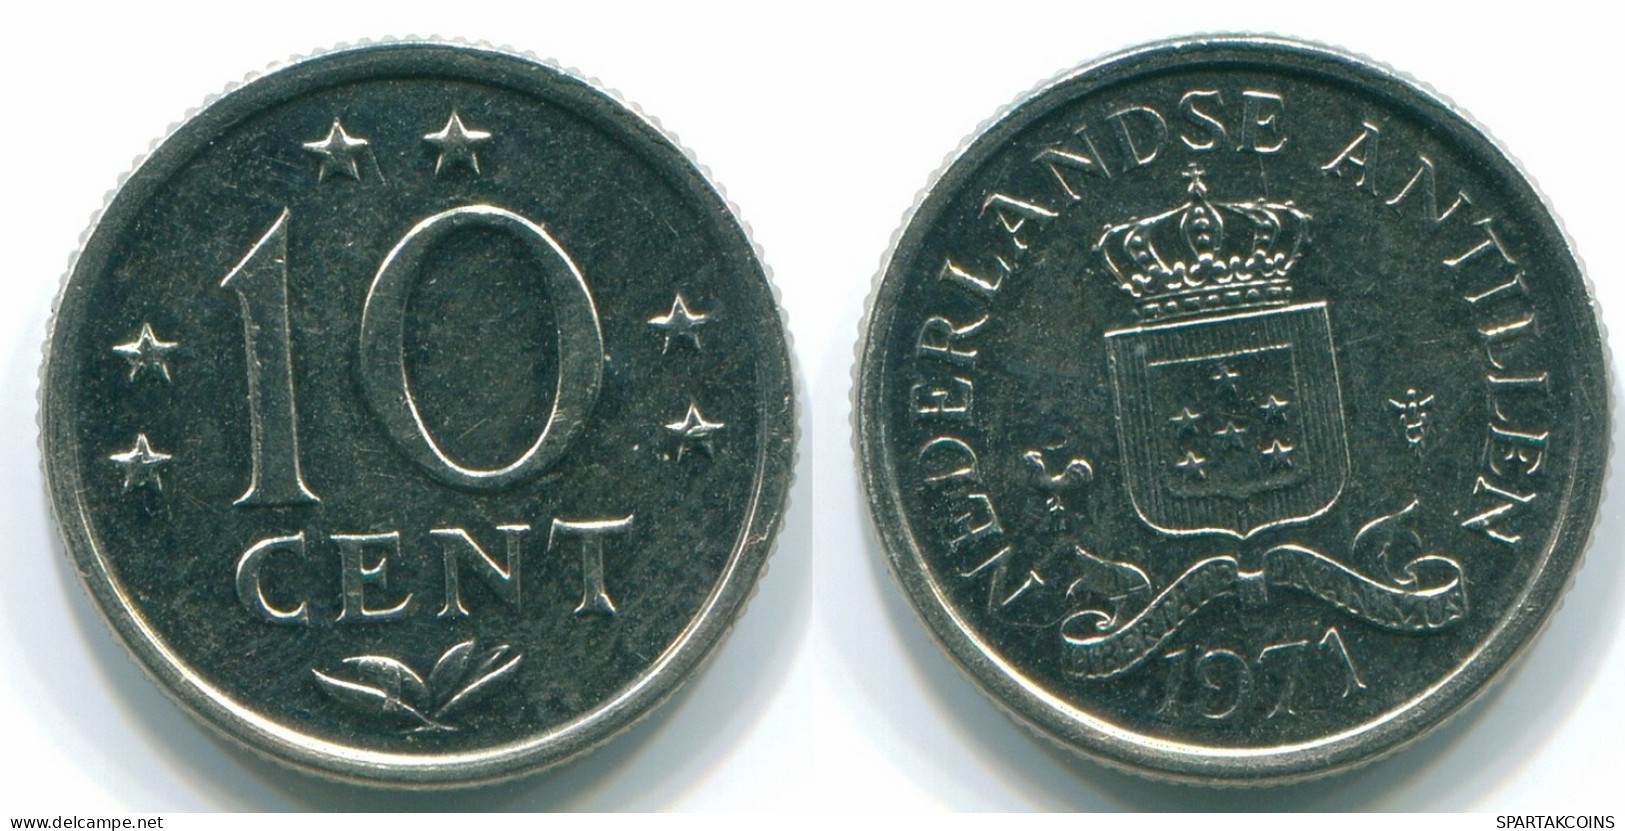 10 CENTS 1971 NETHERLANDS ANTILLES Nickel Colonial Coin #S13403.U.A - Niederländische Antillen